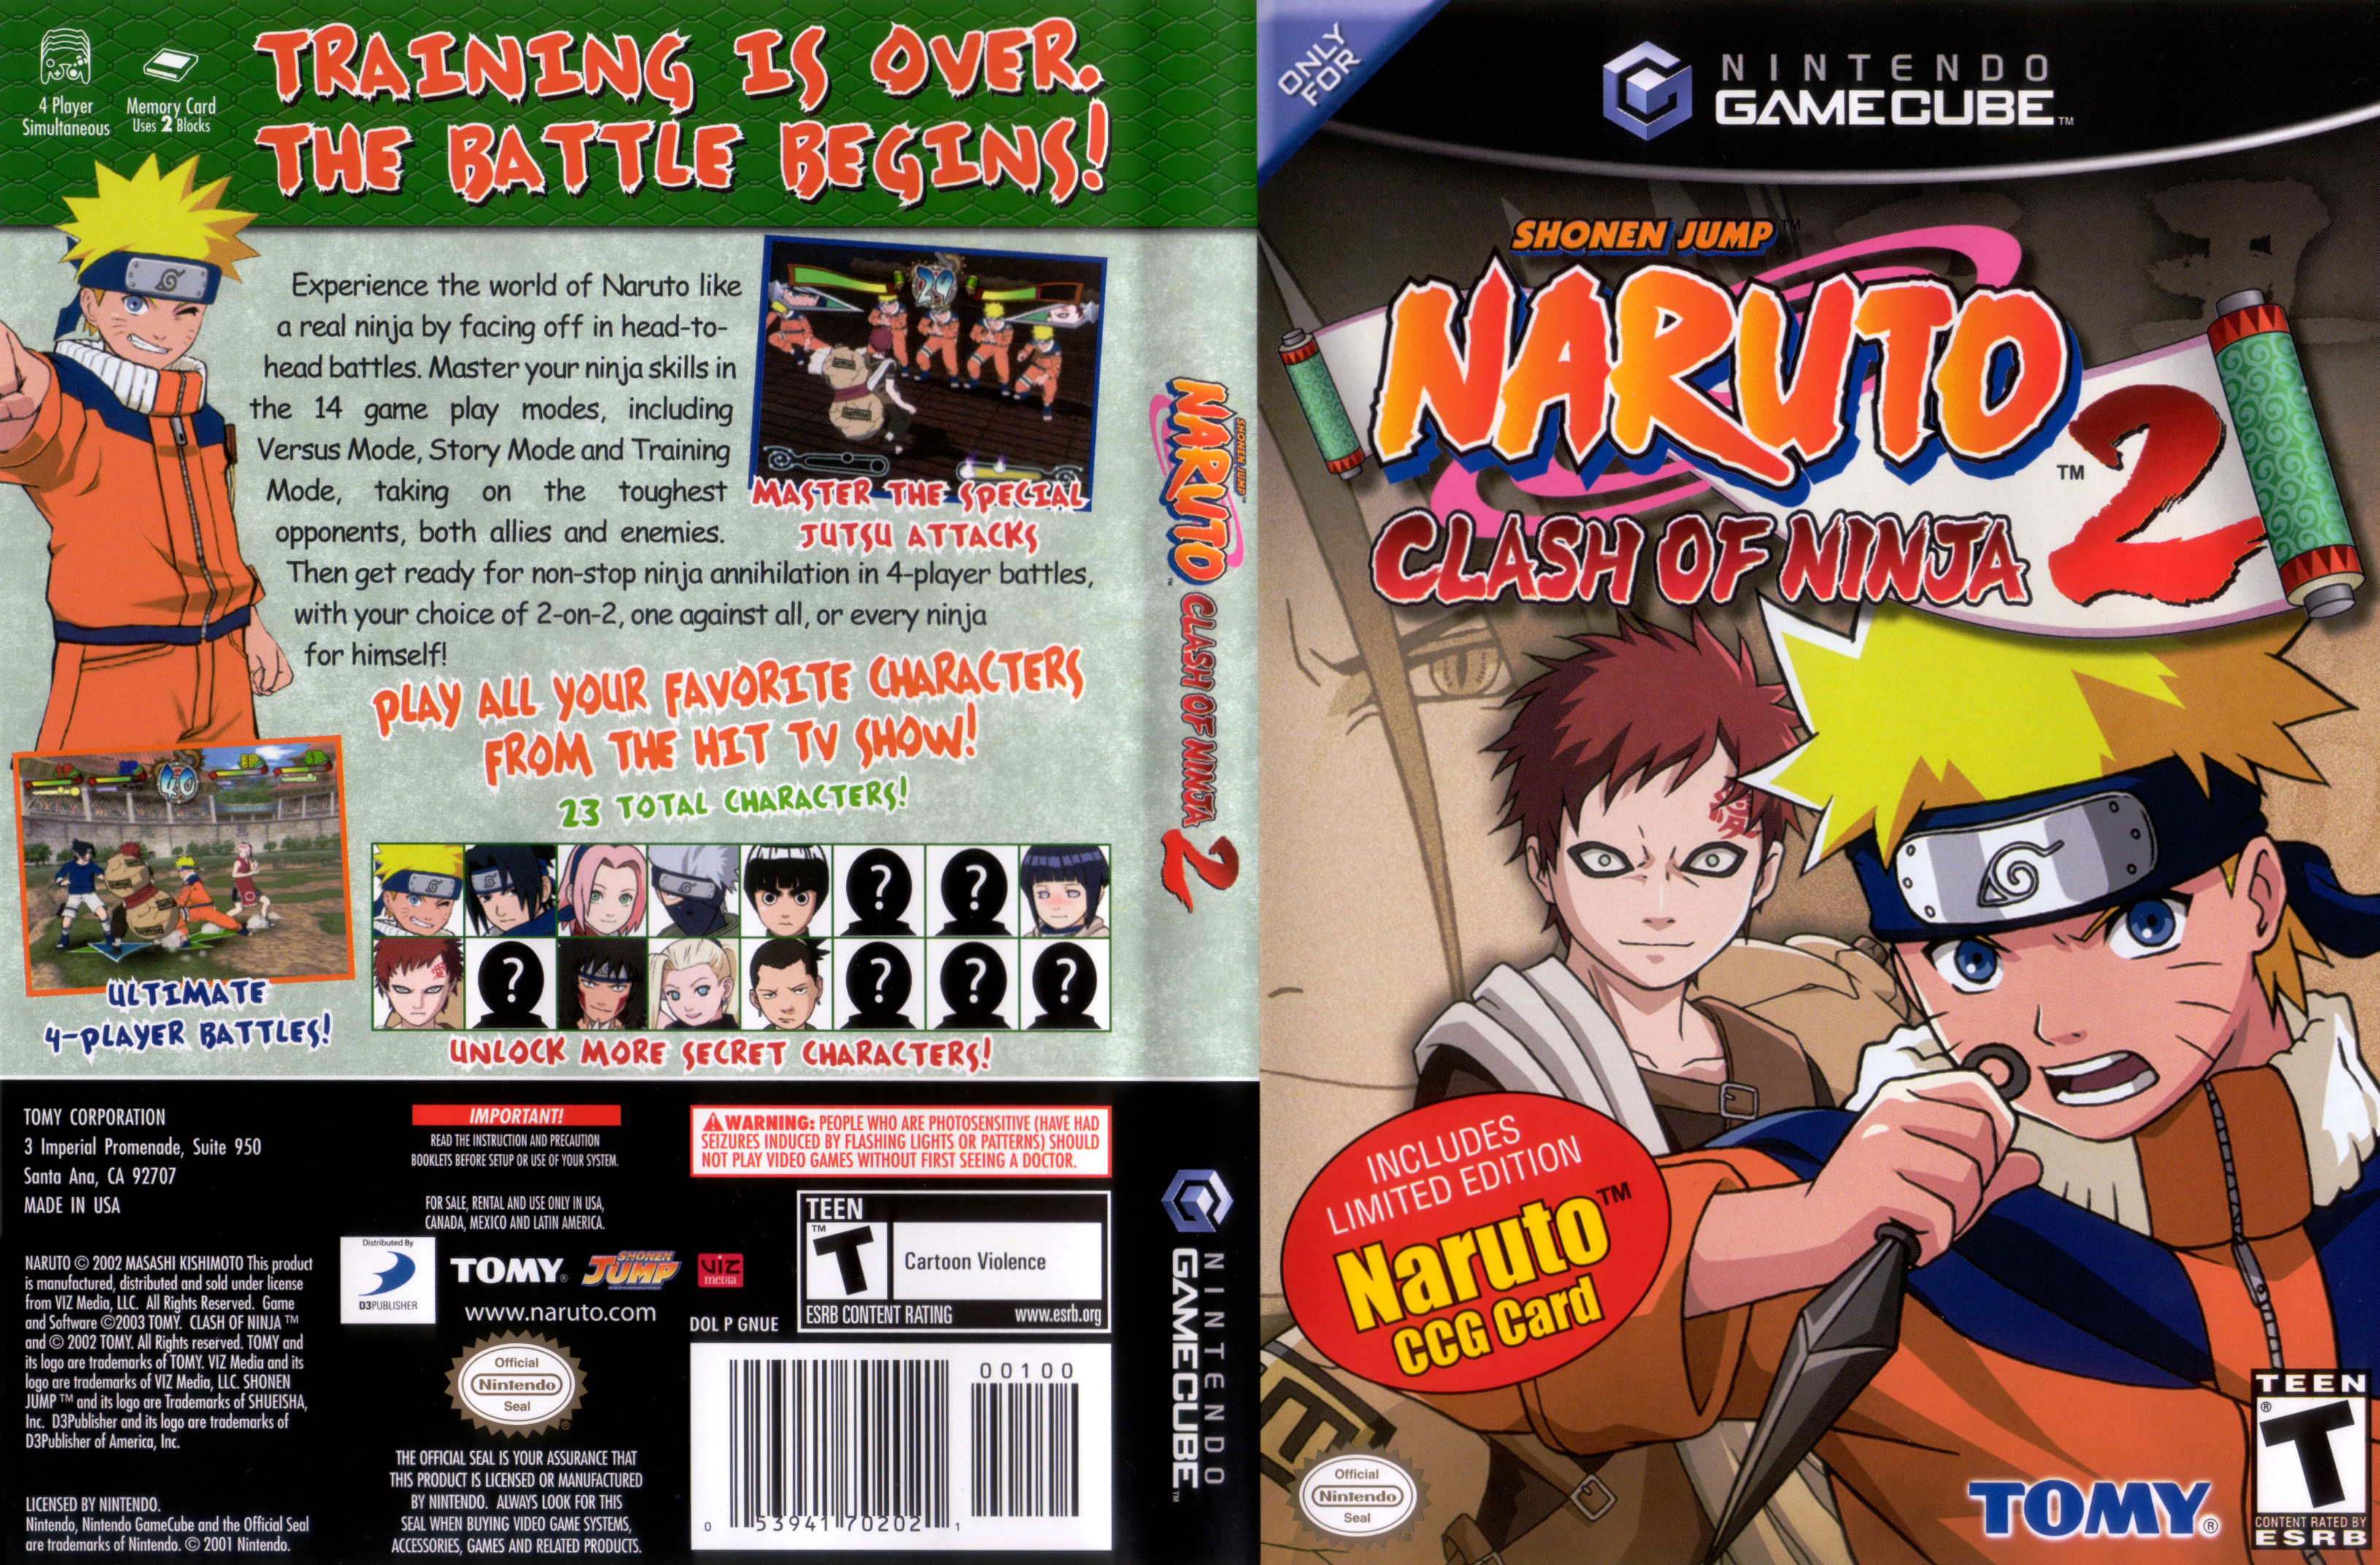 Naruto: Clash of Ninja 2 review